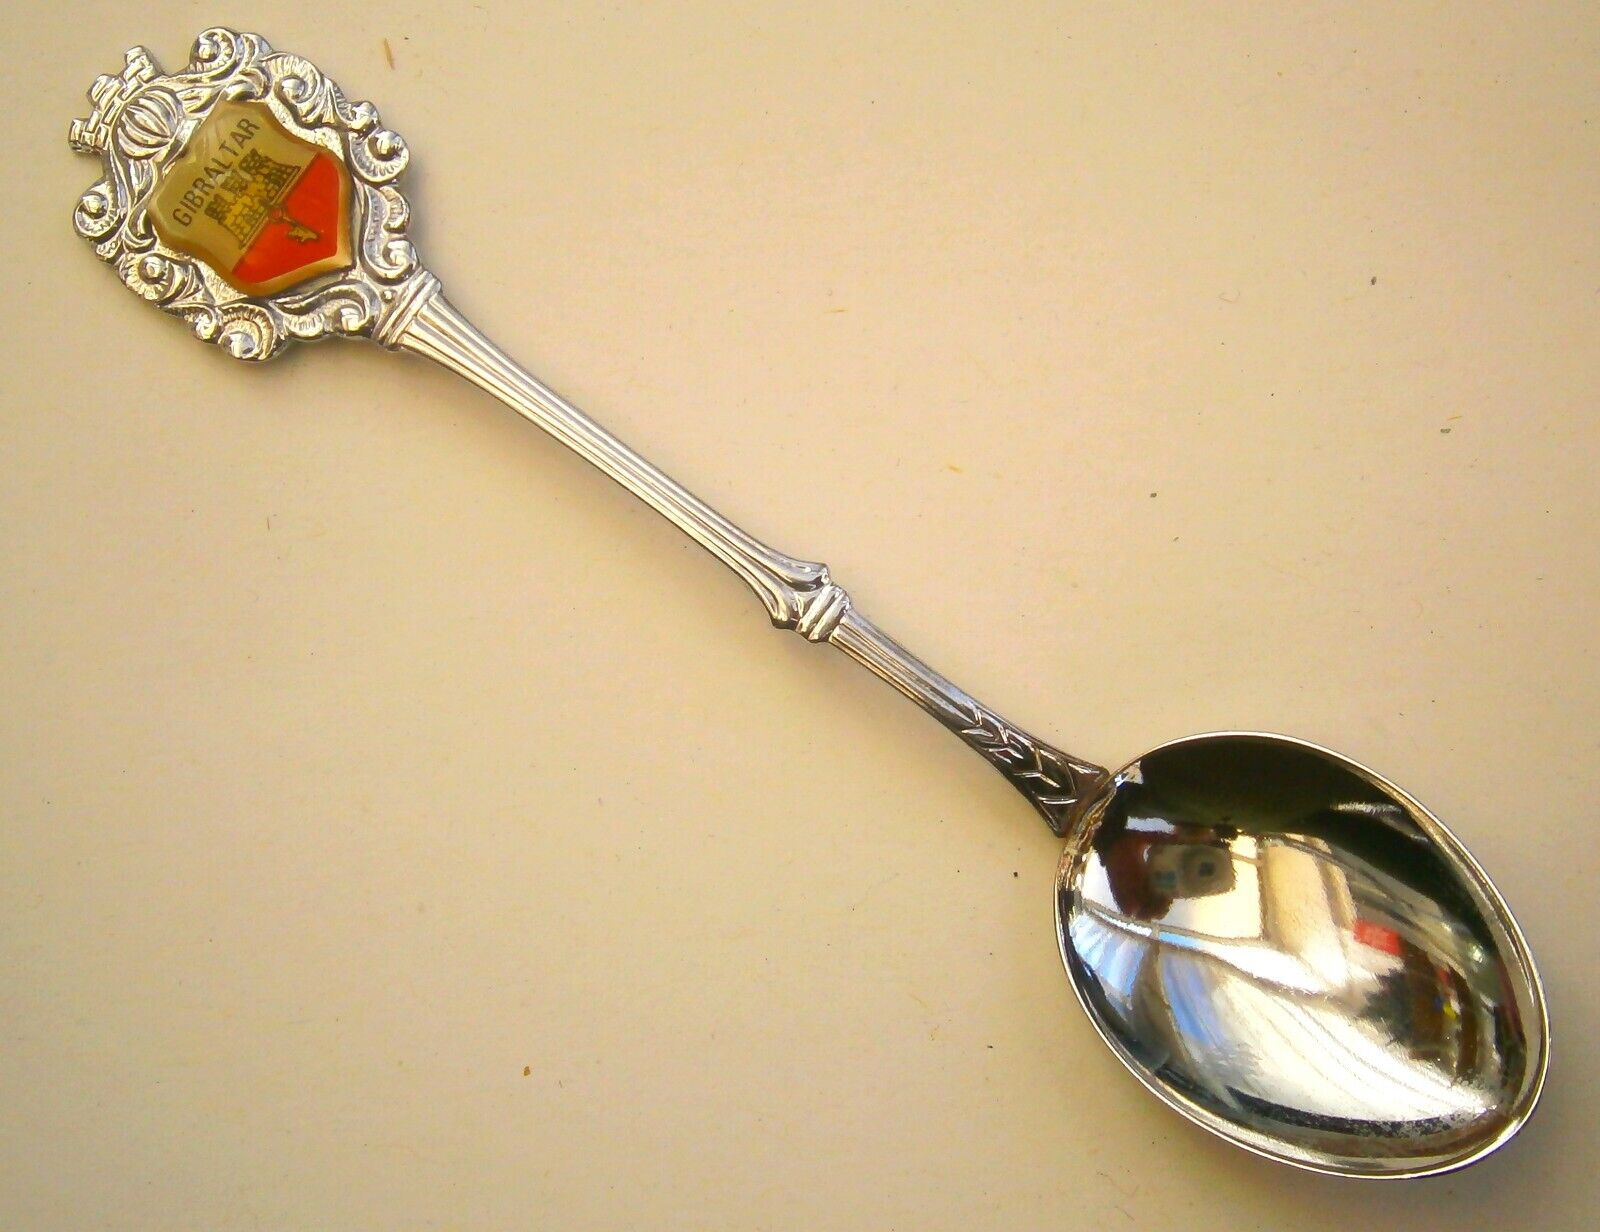 SZ71) Gibraltar crest souvenir vintage collectors spoon